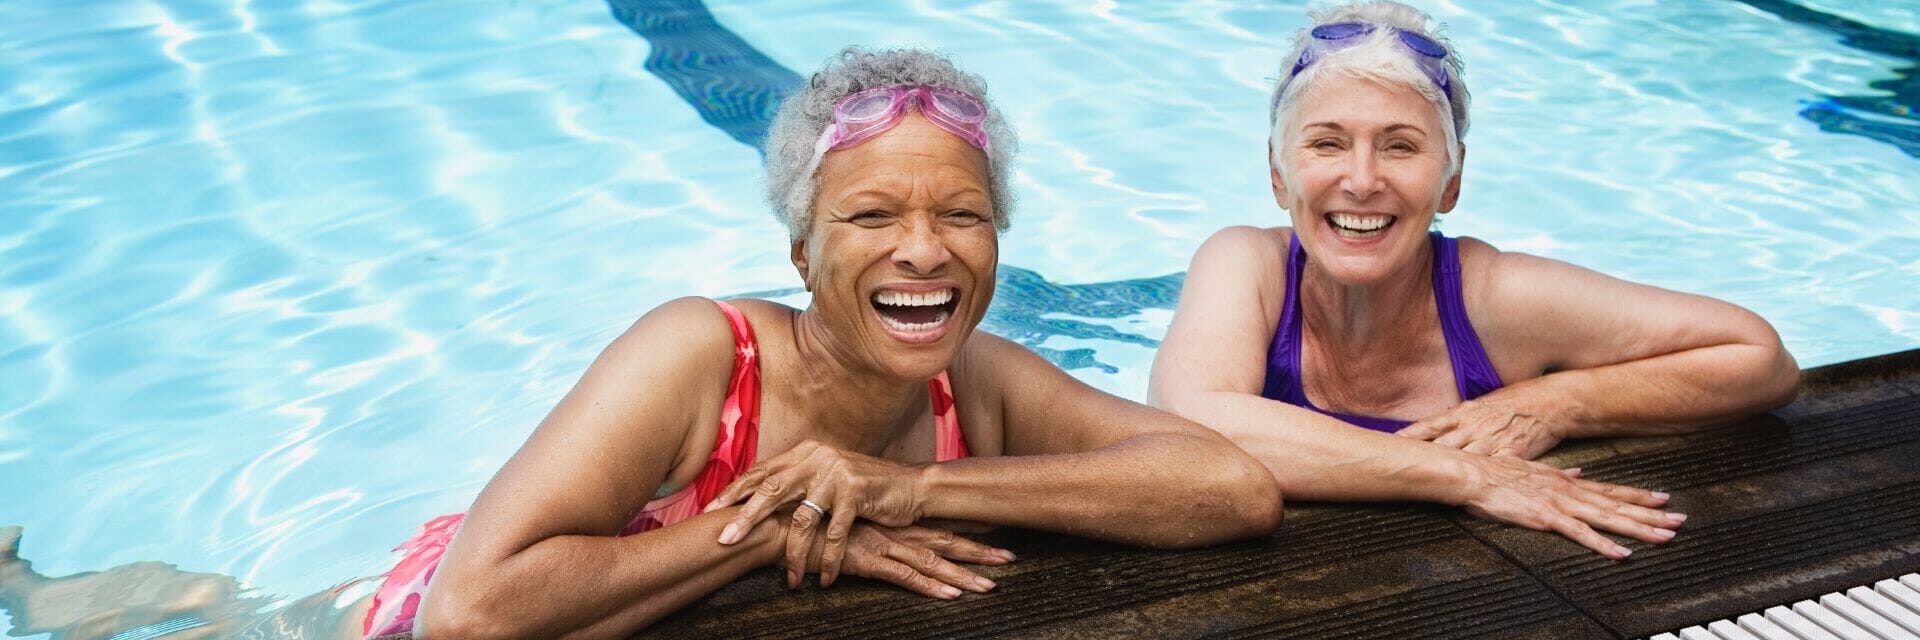 women in pool